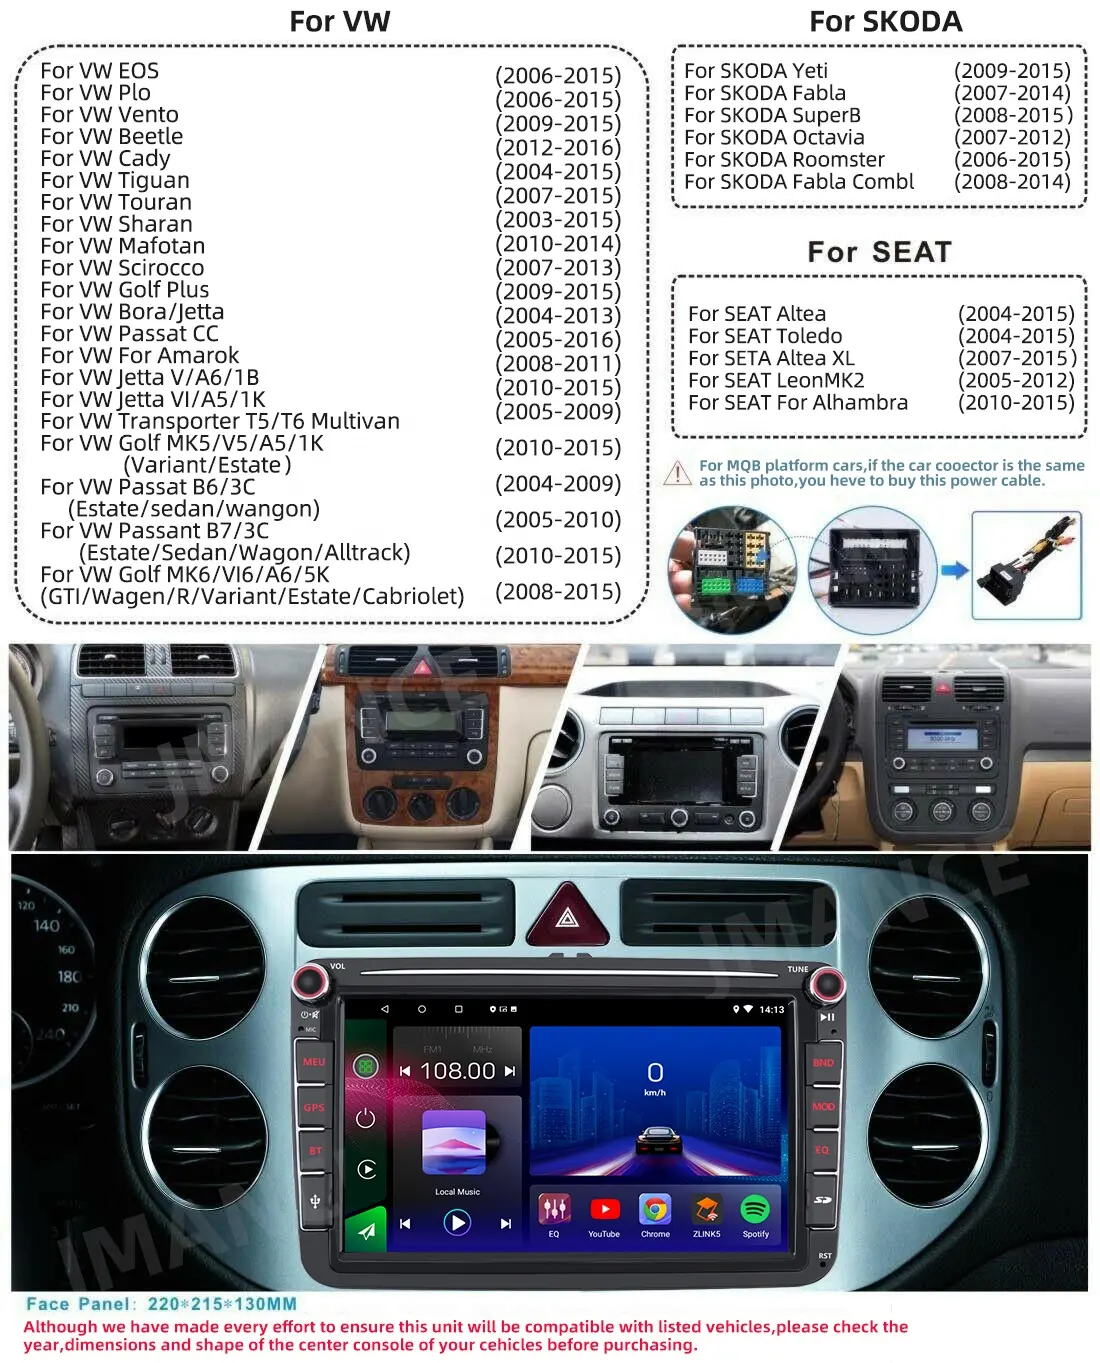 Jmance 8 pouces pour Volkswagen 2 Din GPS Navigation Android Auto Carplay voiture lecteur DVD auto électronique